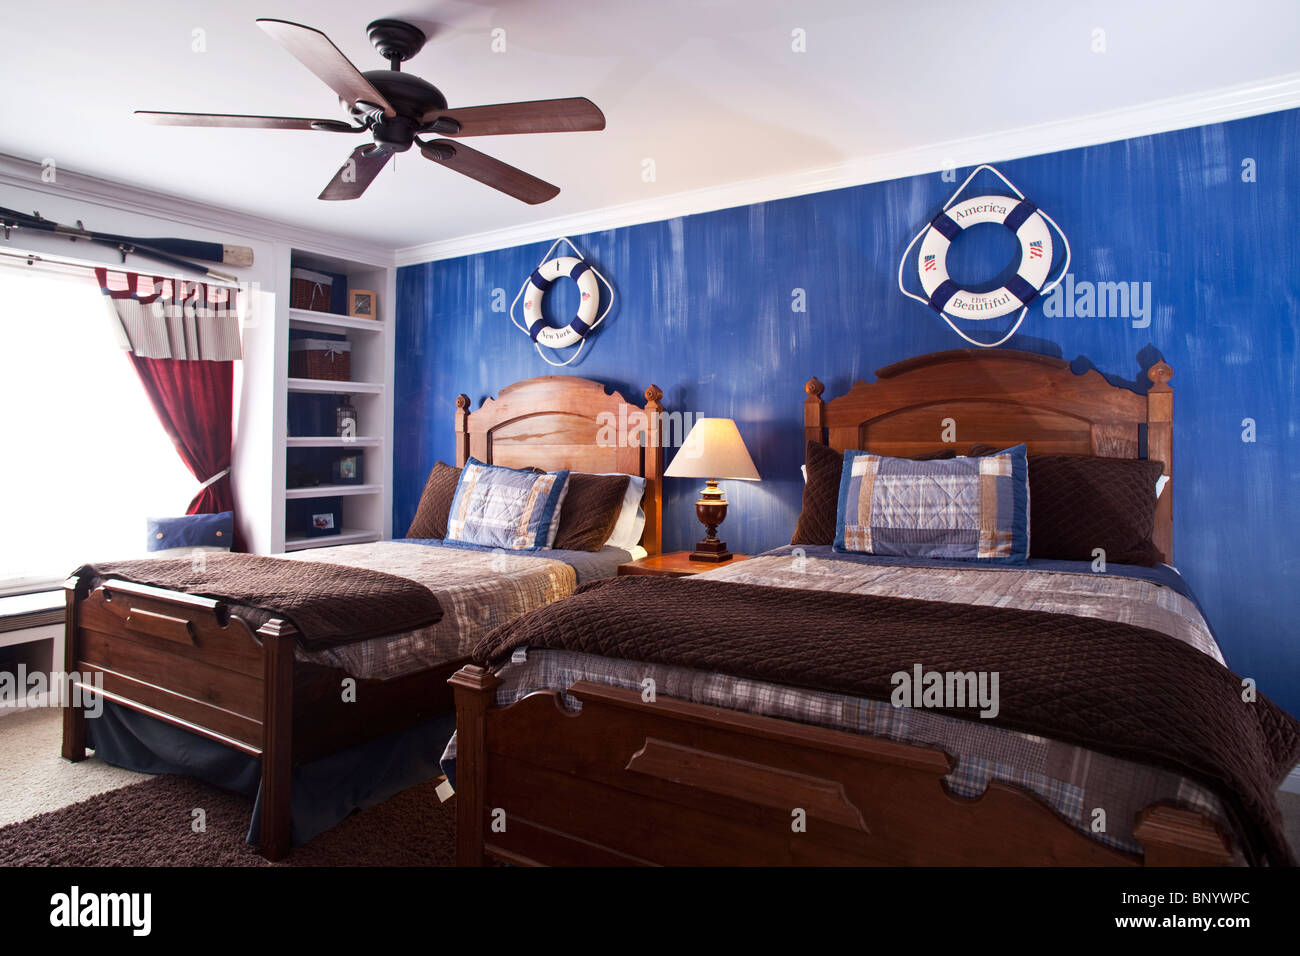 Kinderschlafzimmer mit zwei Betten, hölzerne Landhausmöbel Bücherregal und dekoriert mit Segelausrüstung Stockfoto